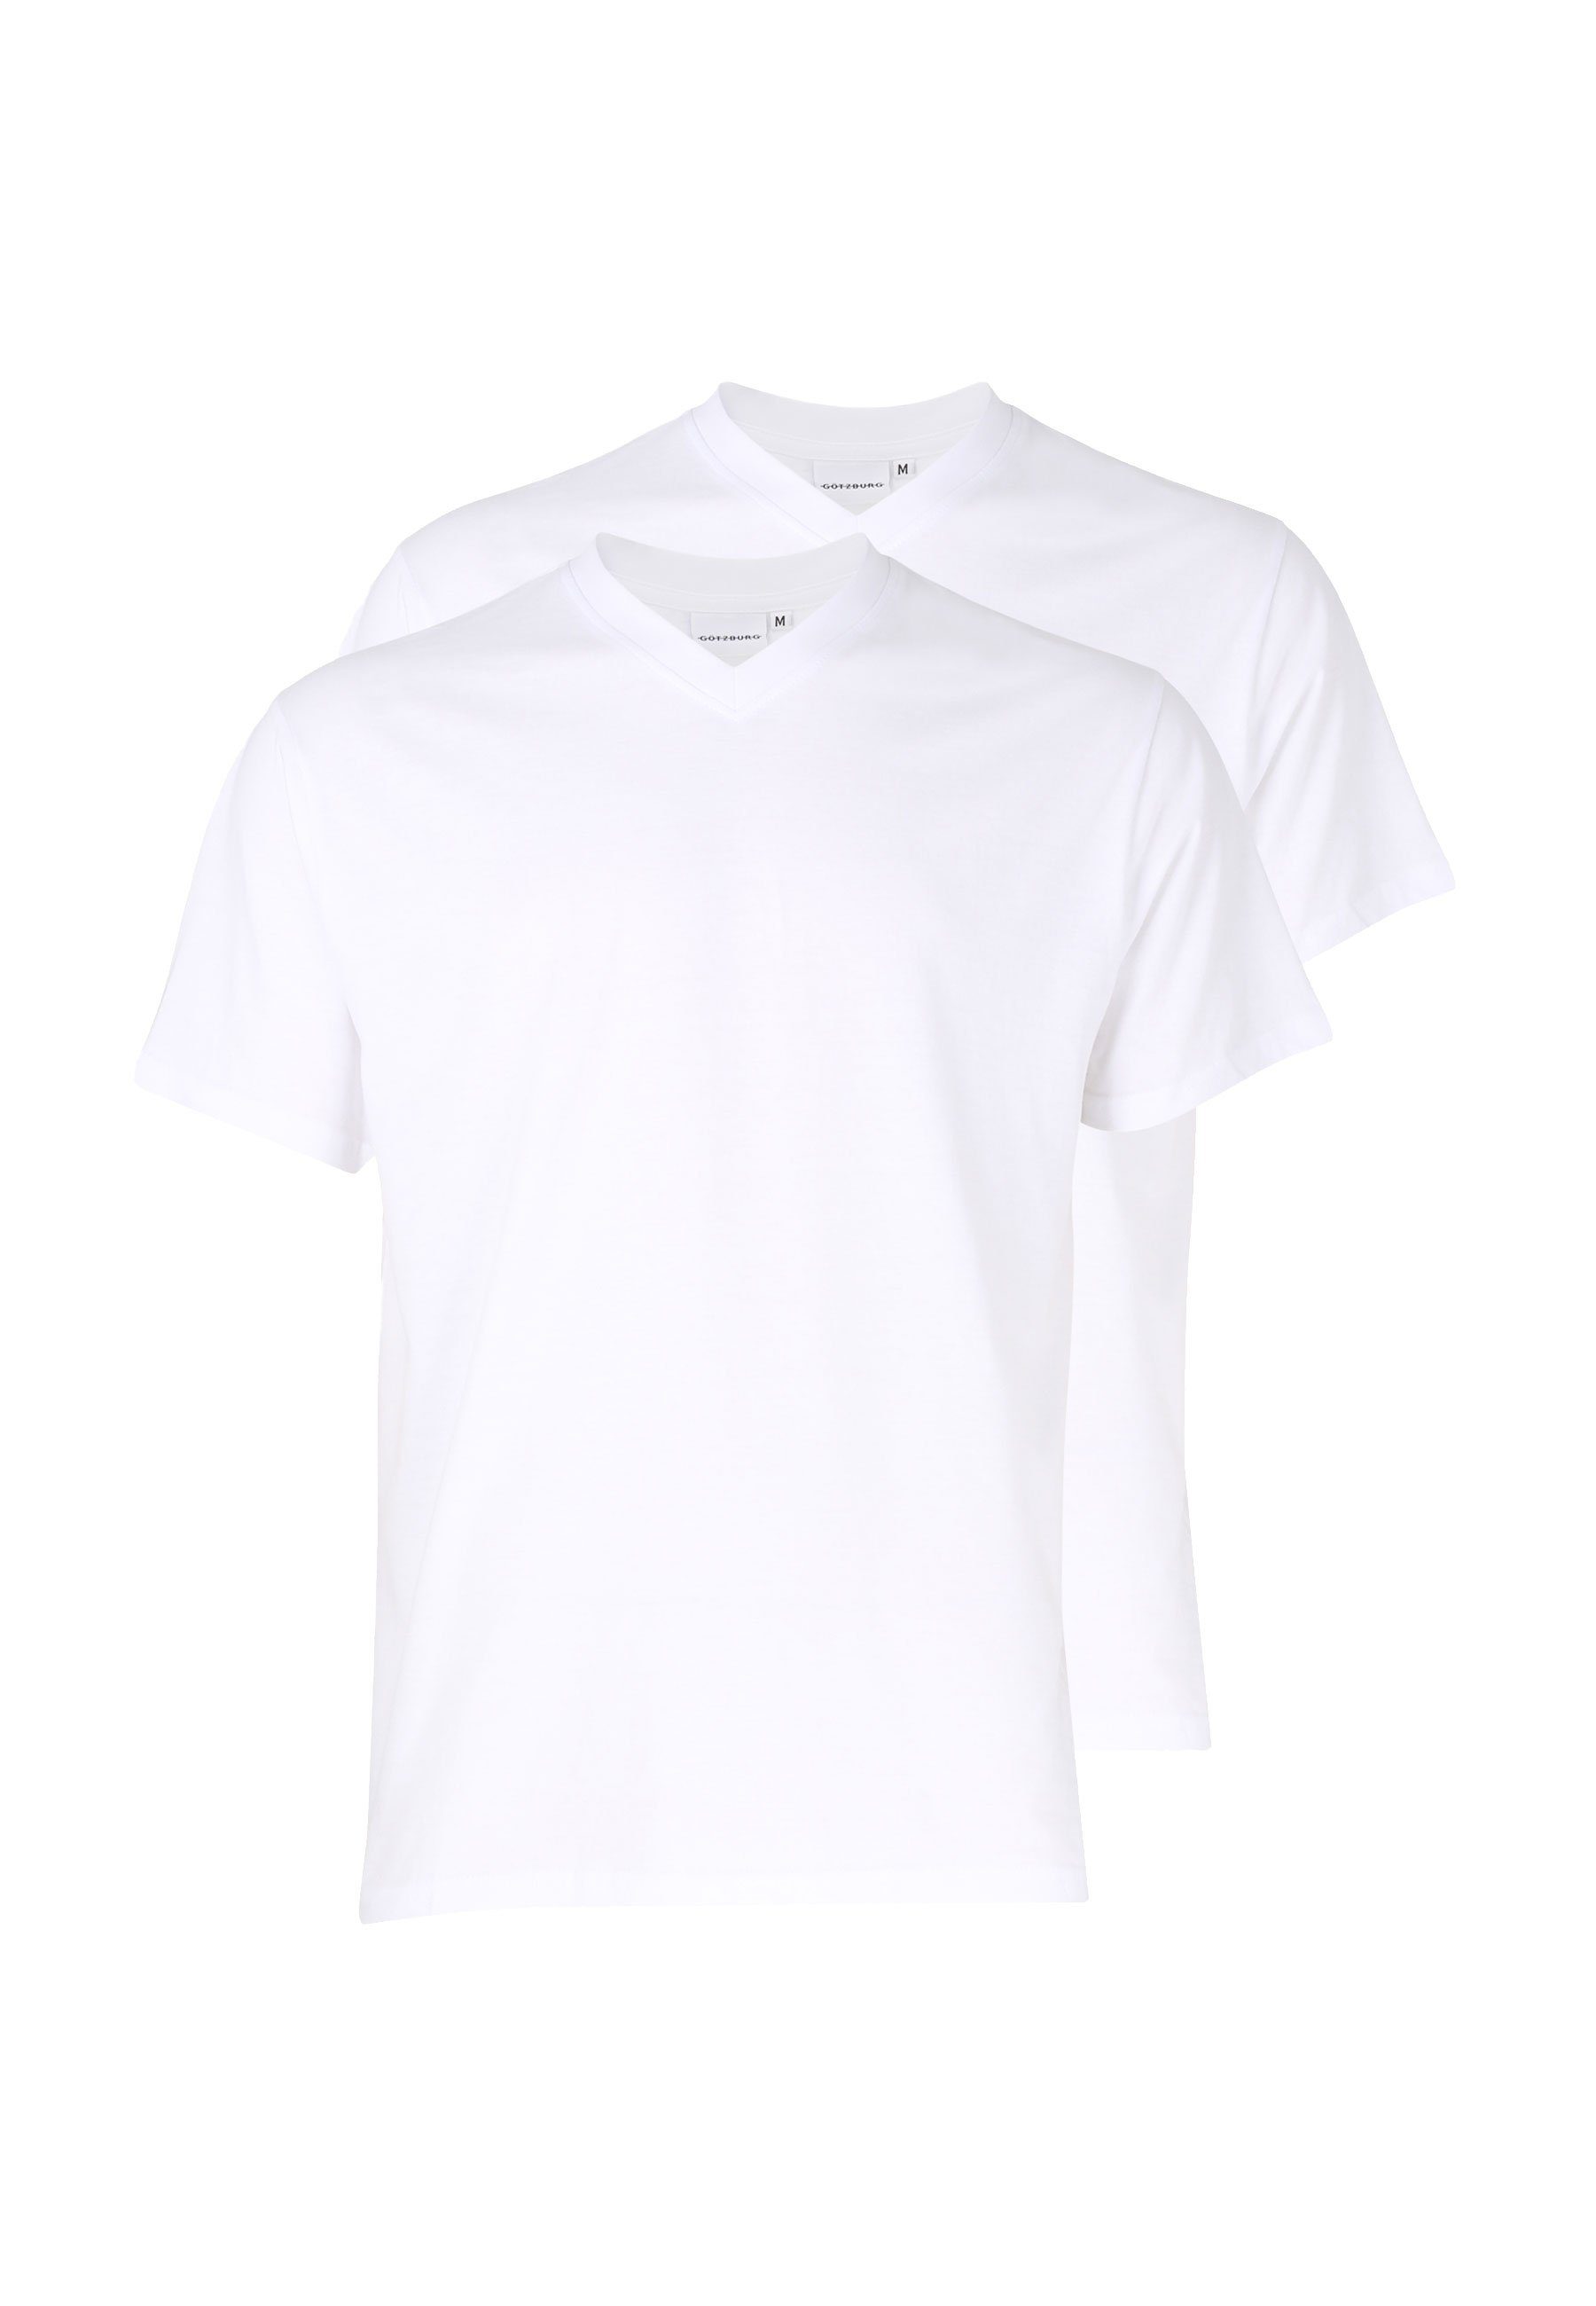 GÖTZBURG Unterziehshirt GÖTZBURG Herren T-Shirt weiß uni 2er Pack (2-St) weiss